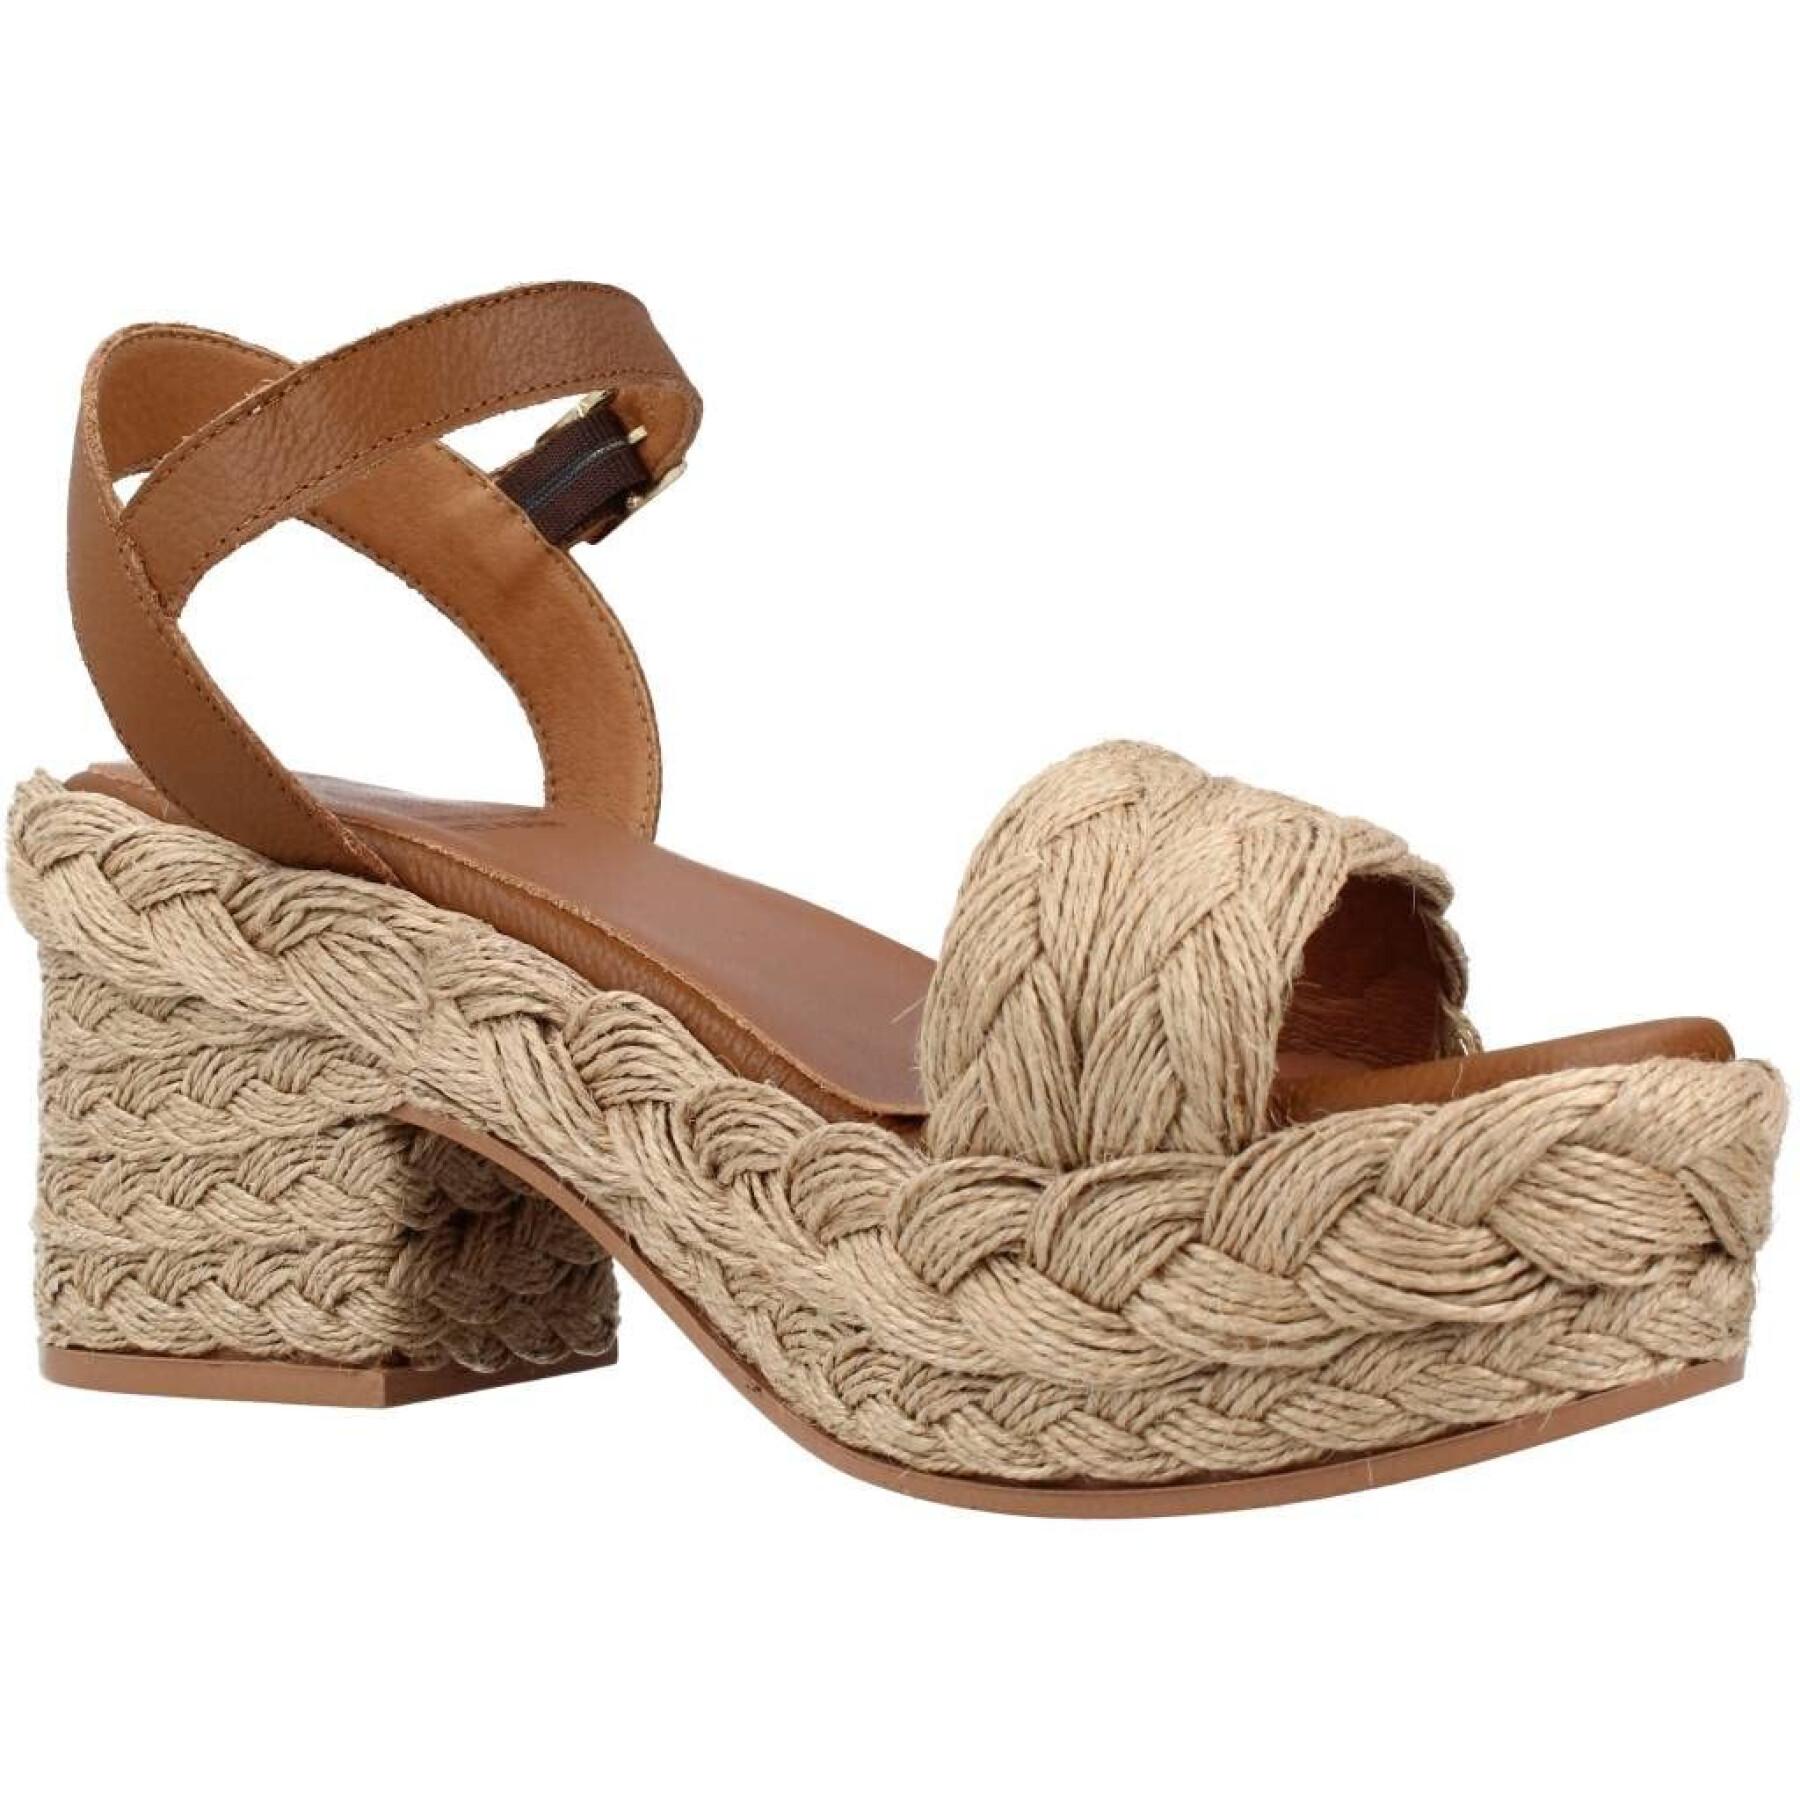 Women's sandals Popa amur